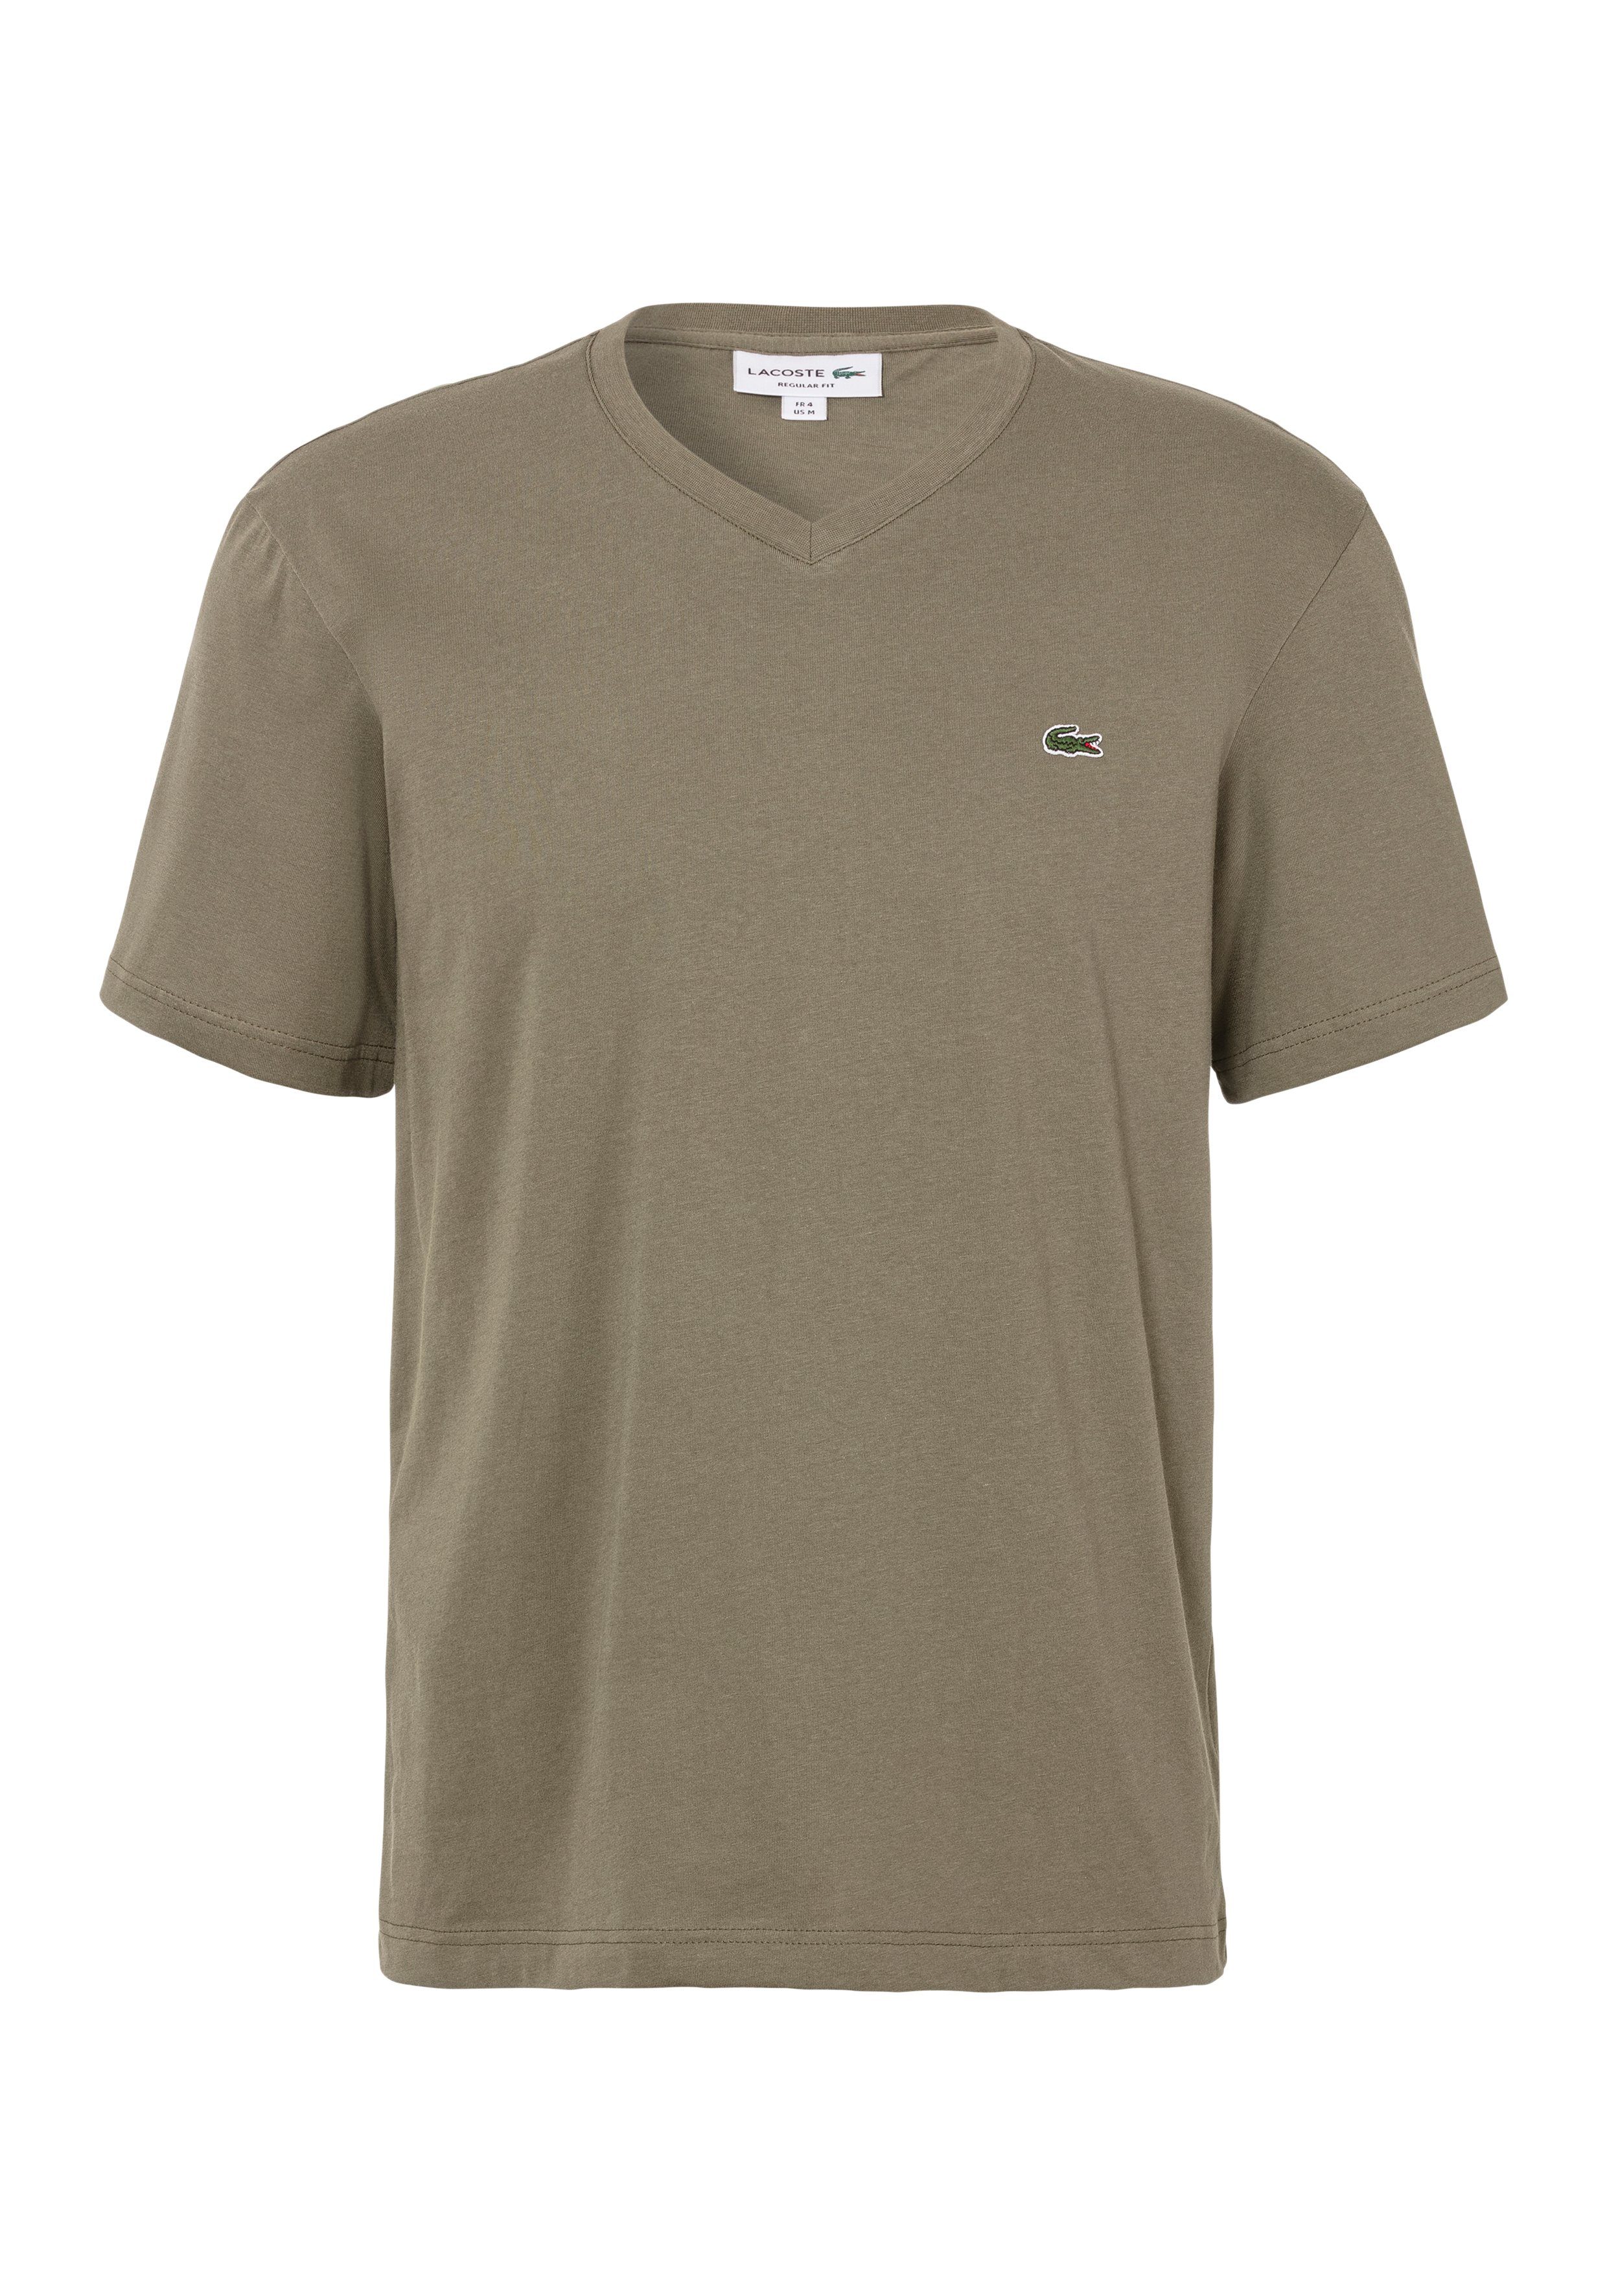 Grüne Lacoste T-Shirts für Herren online kaufen | OTTO